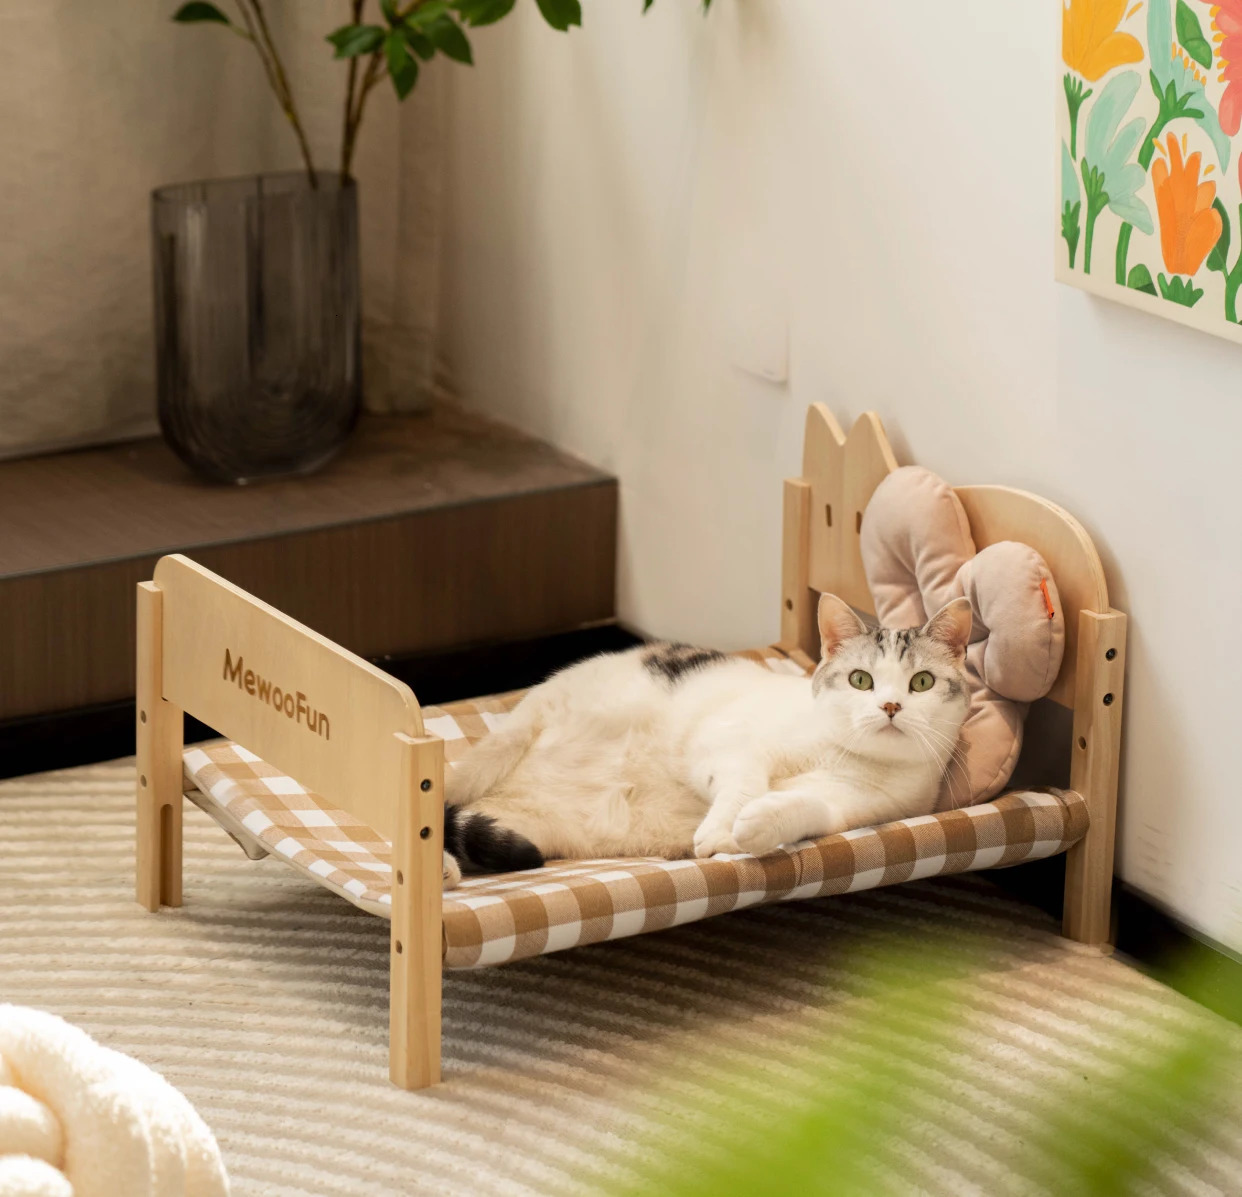 Penne per canili MEWOOFUN Robusto divano letto per gatti in legno Divano staccabile in tela traspirante per gatti e cani di piccola taglia in estate 231206